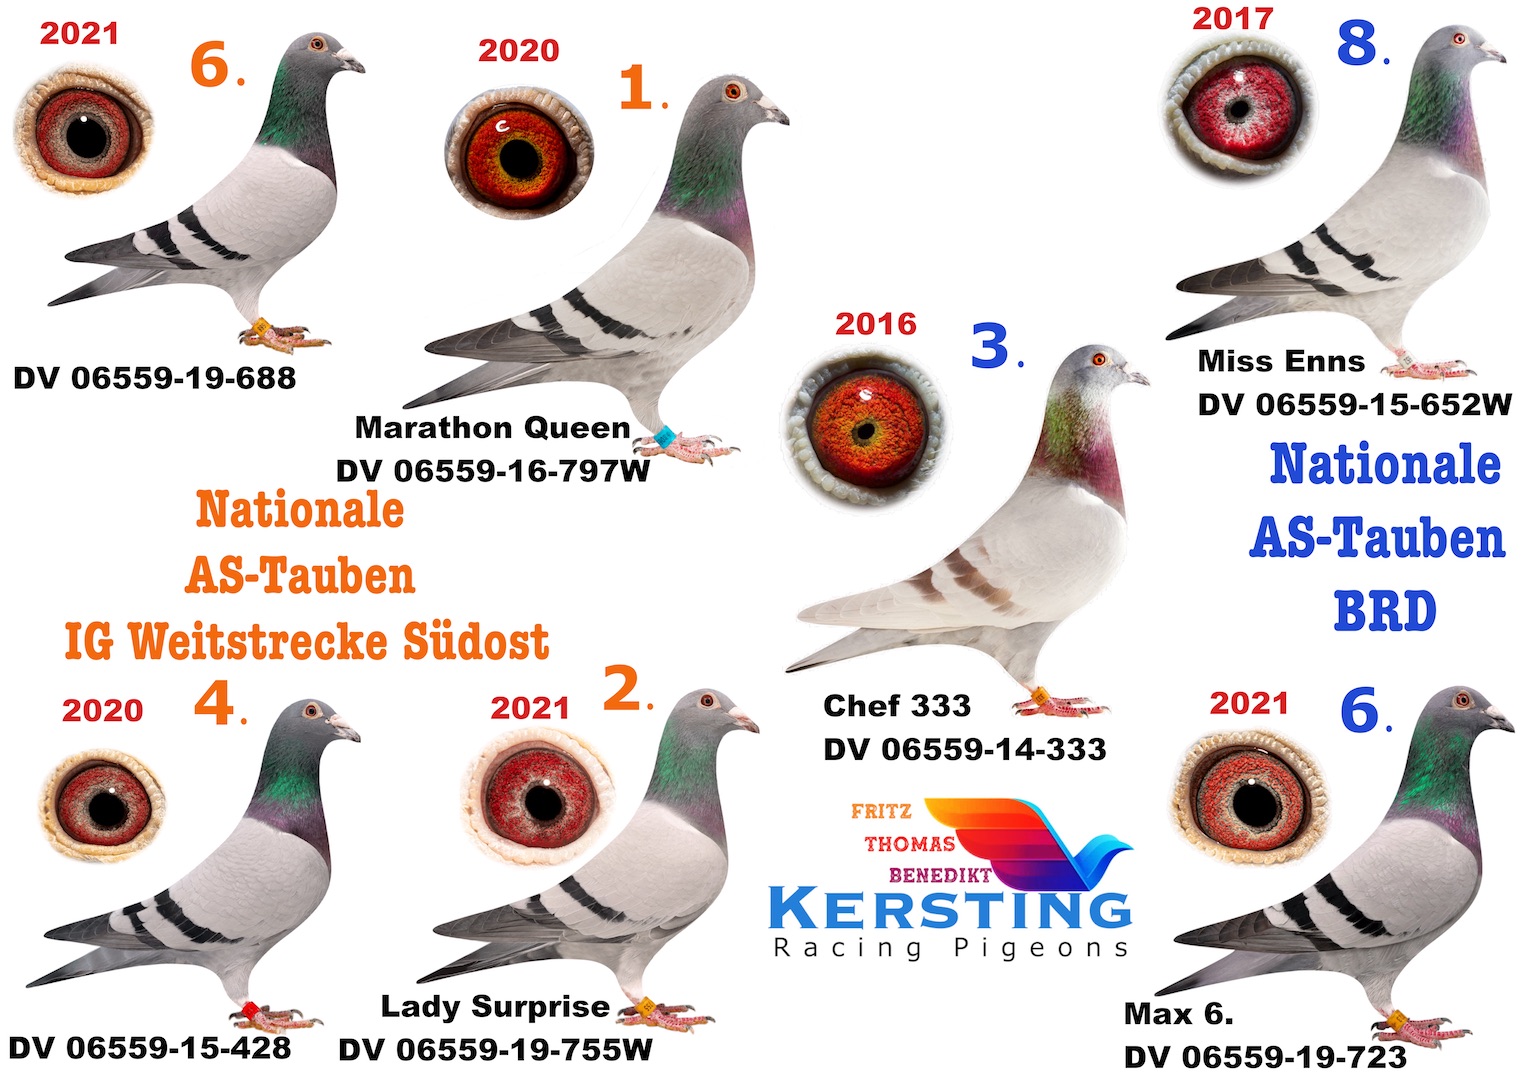 Nationale AS-Tauben in 5 Jahren